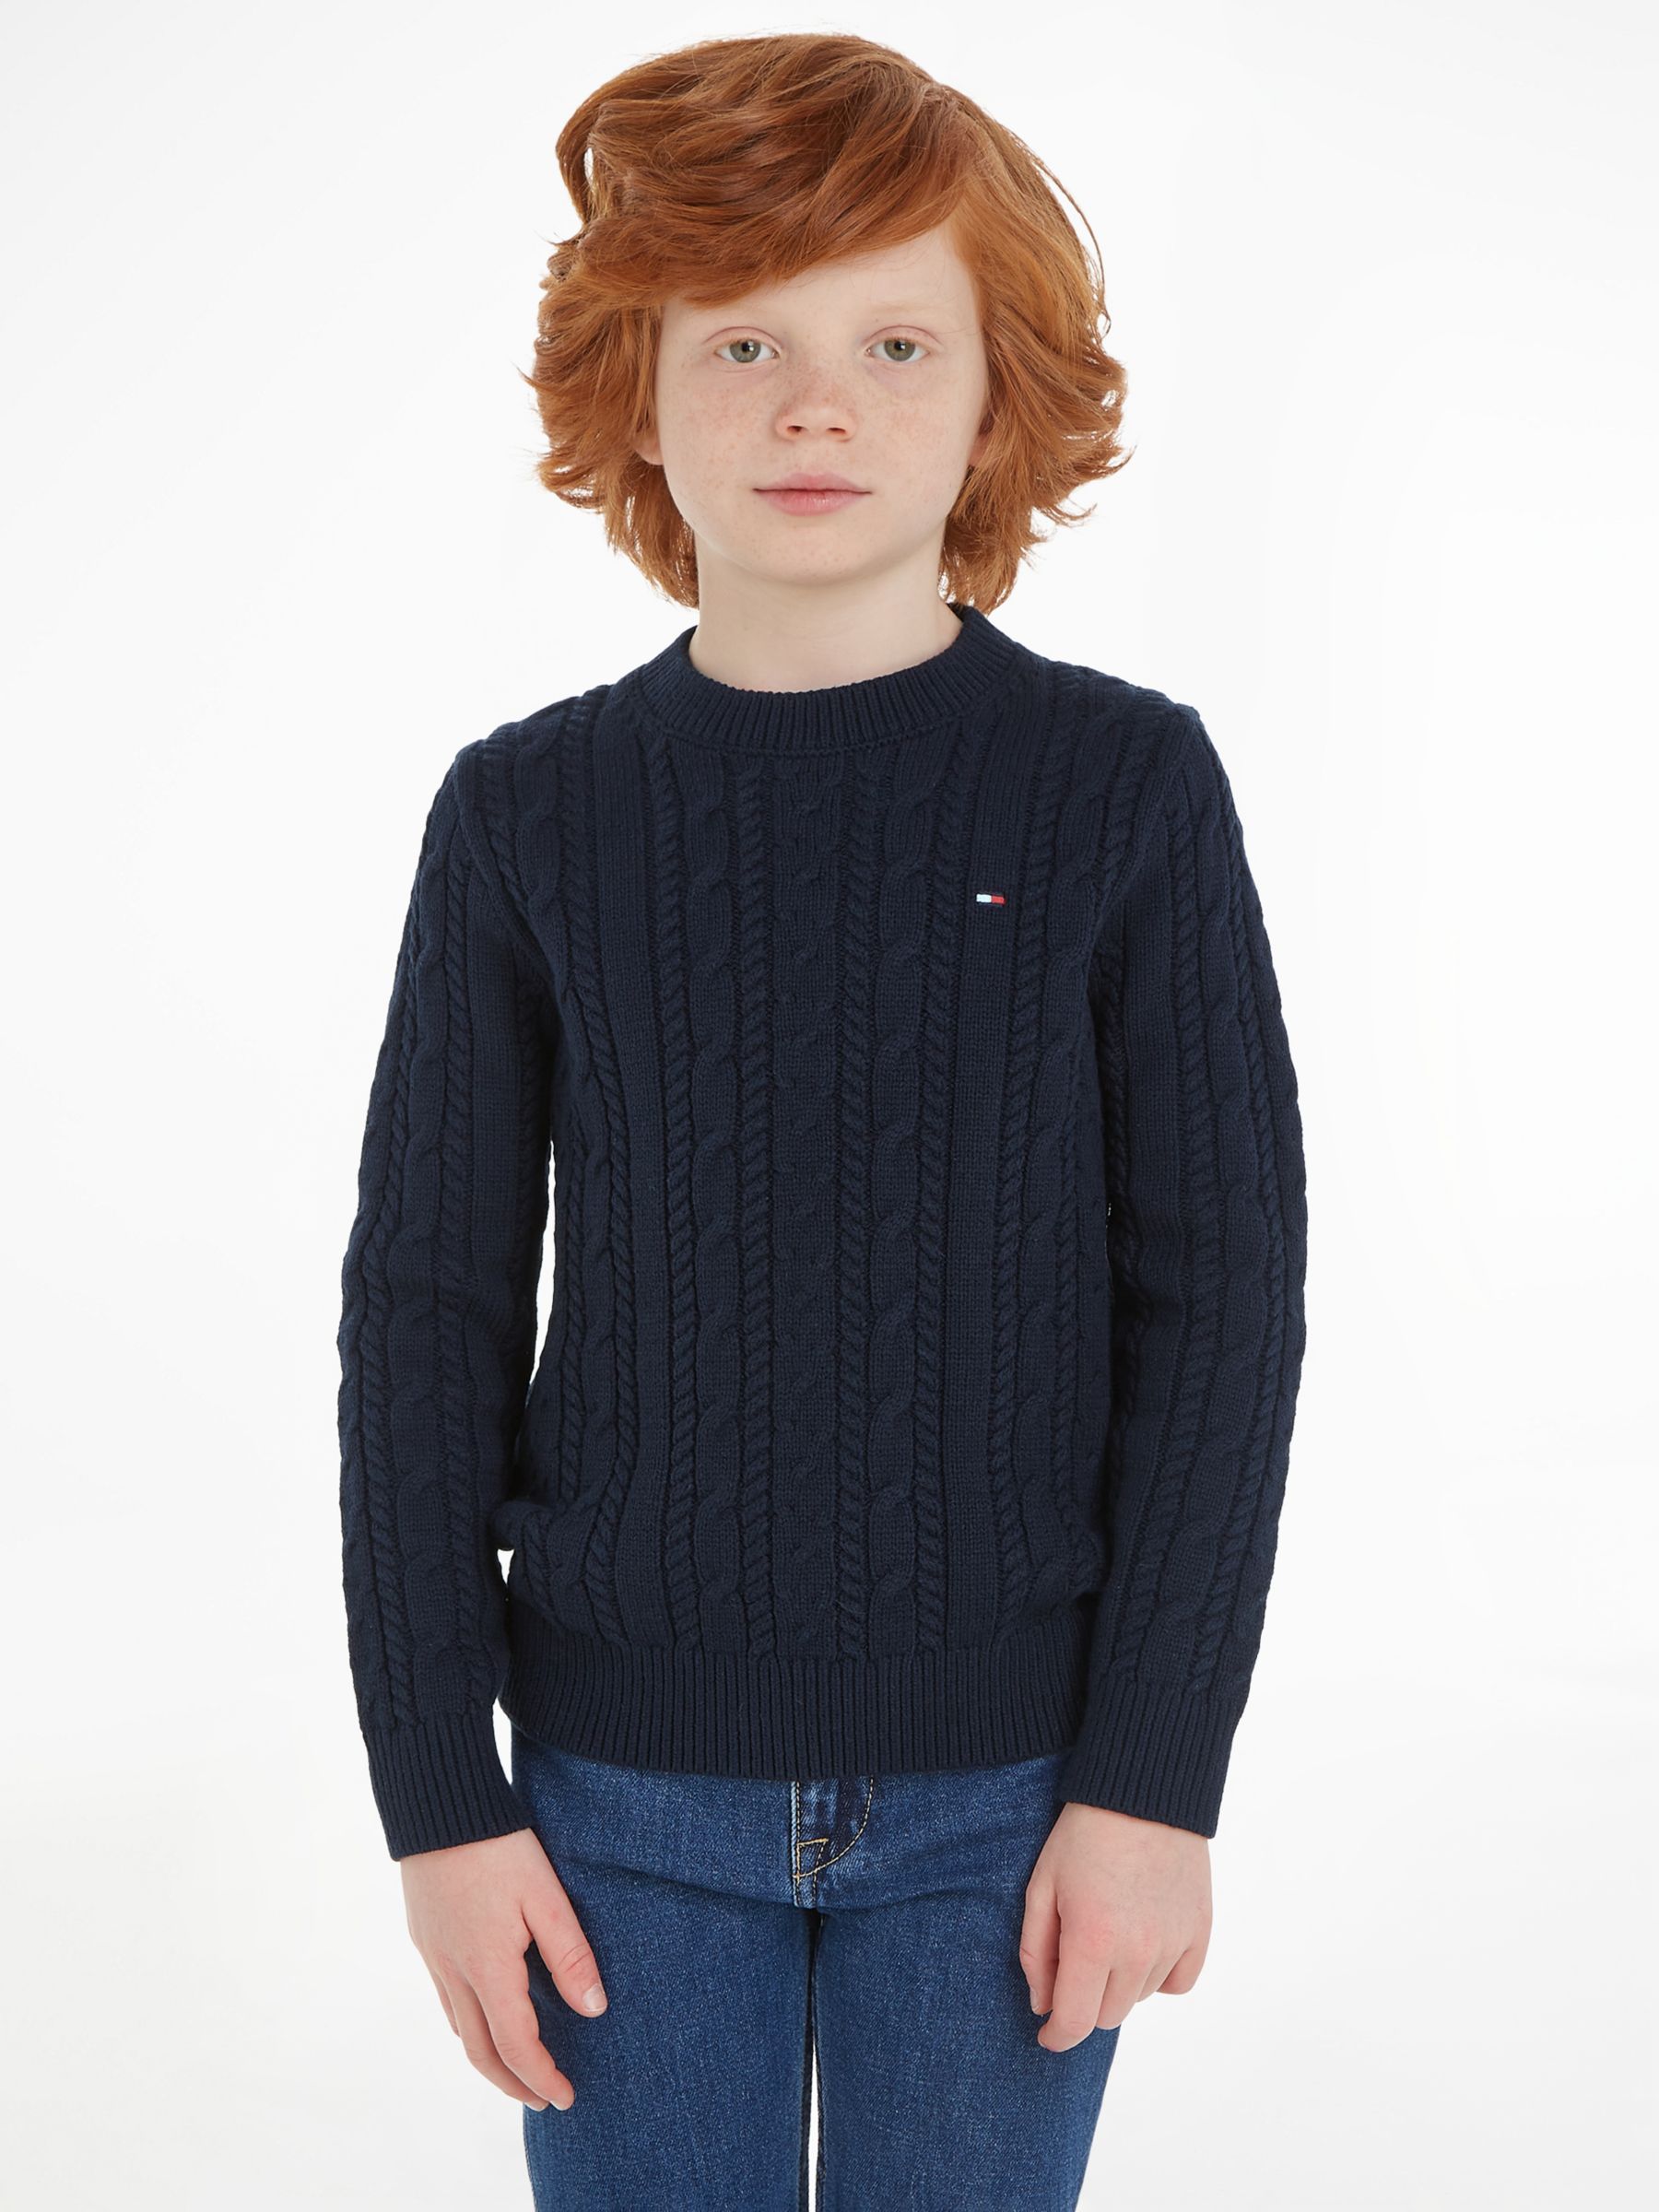 Tommy Hilfiger Boys Knitwear | John Lewis & Partners